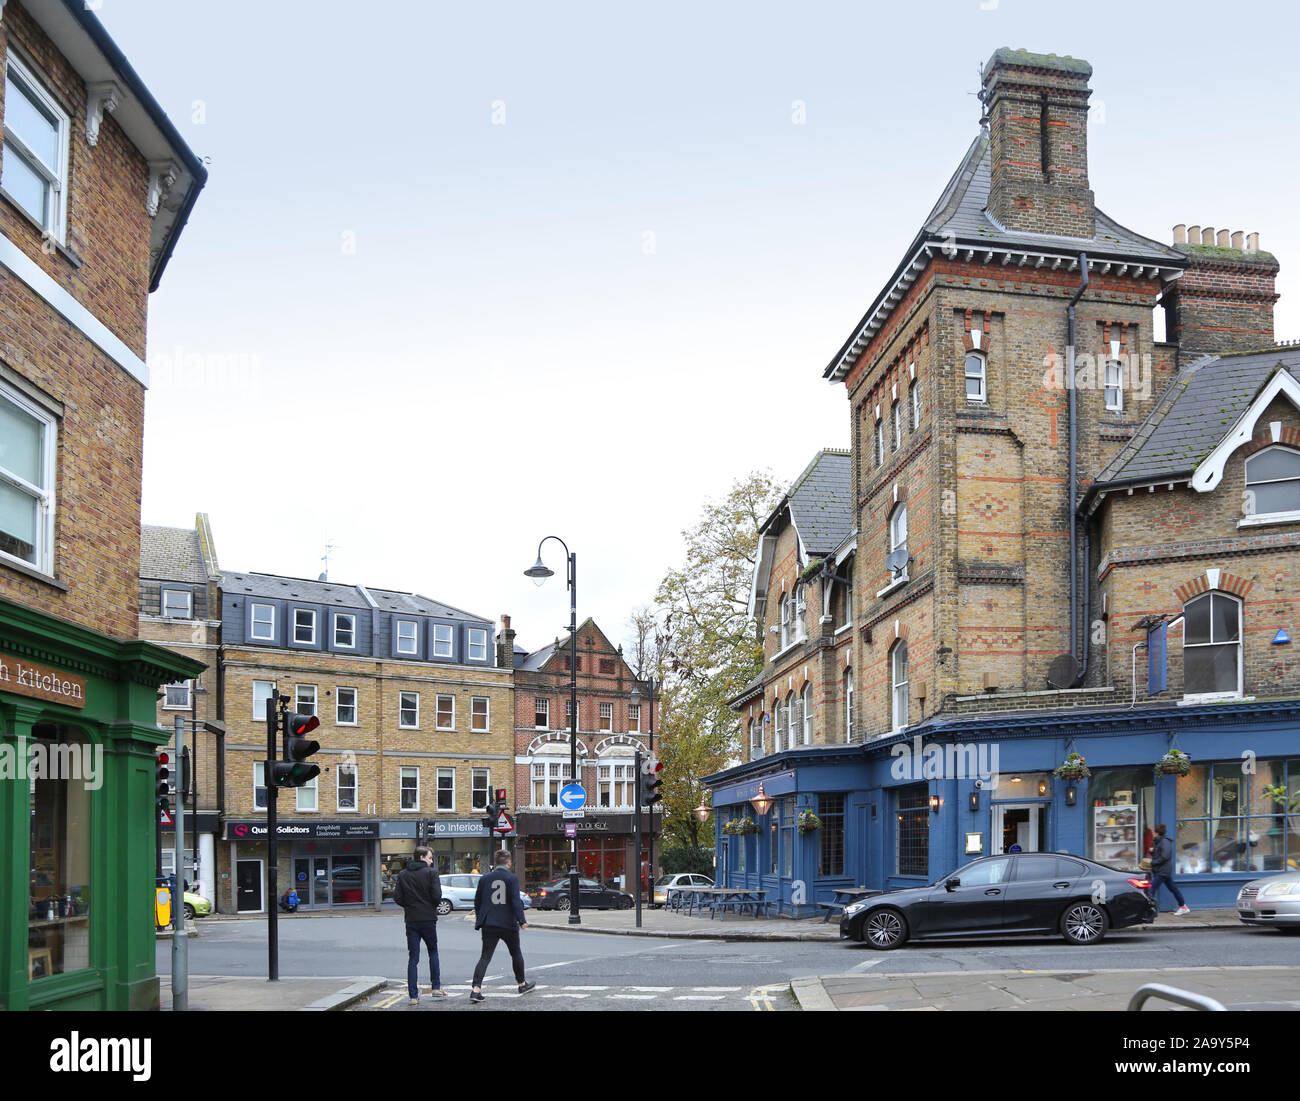 Caffè, negozi e pub sulla strada della Chiesa, il Crystal Palace di Londra, Regno Unito. Mostra marrone e verde cafe (sinistra), White Hart pub (a destra). Westow Street in background. Foto Stock